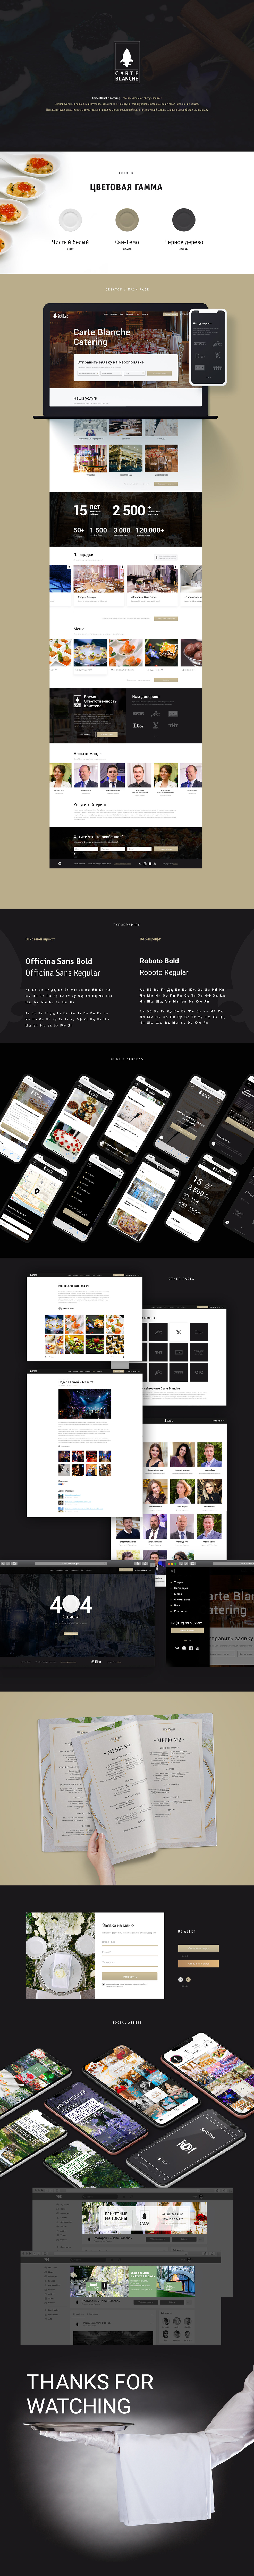 design catering Web uiux site UI ux social